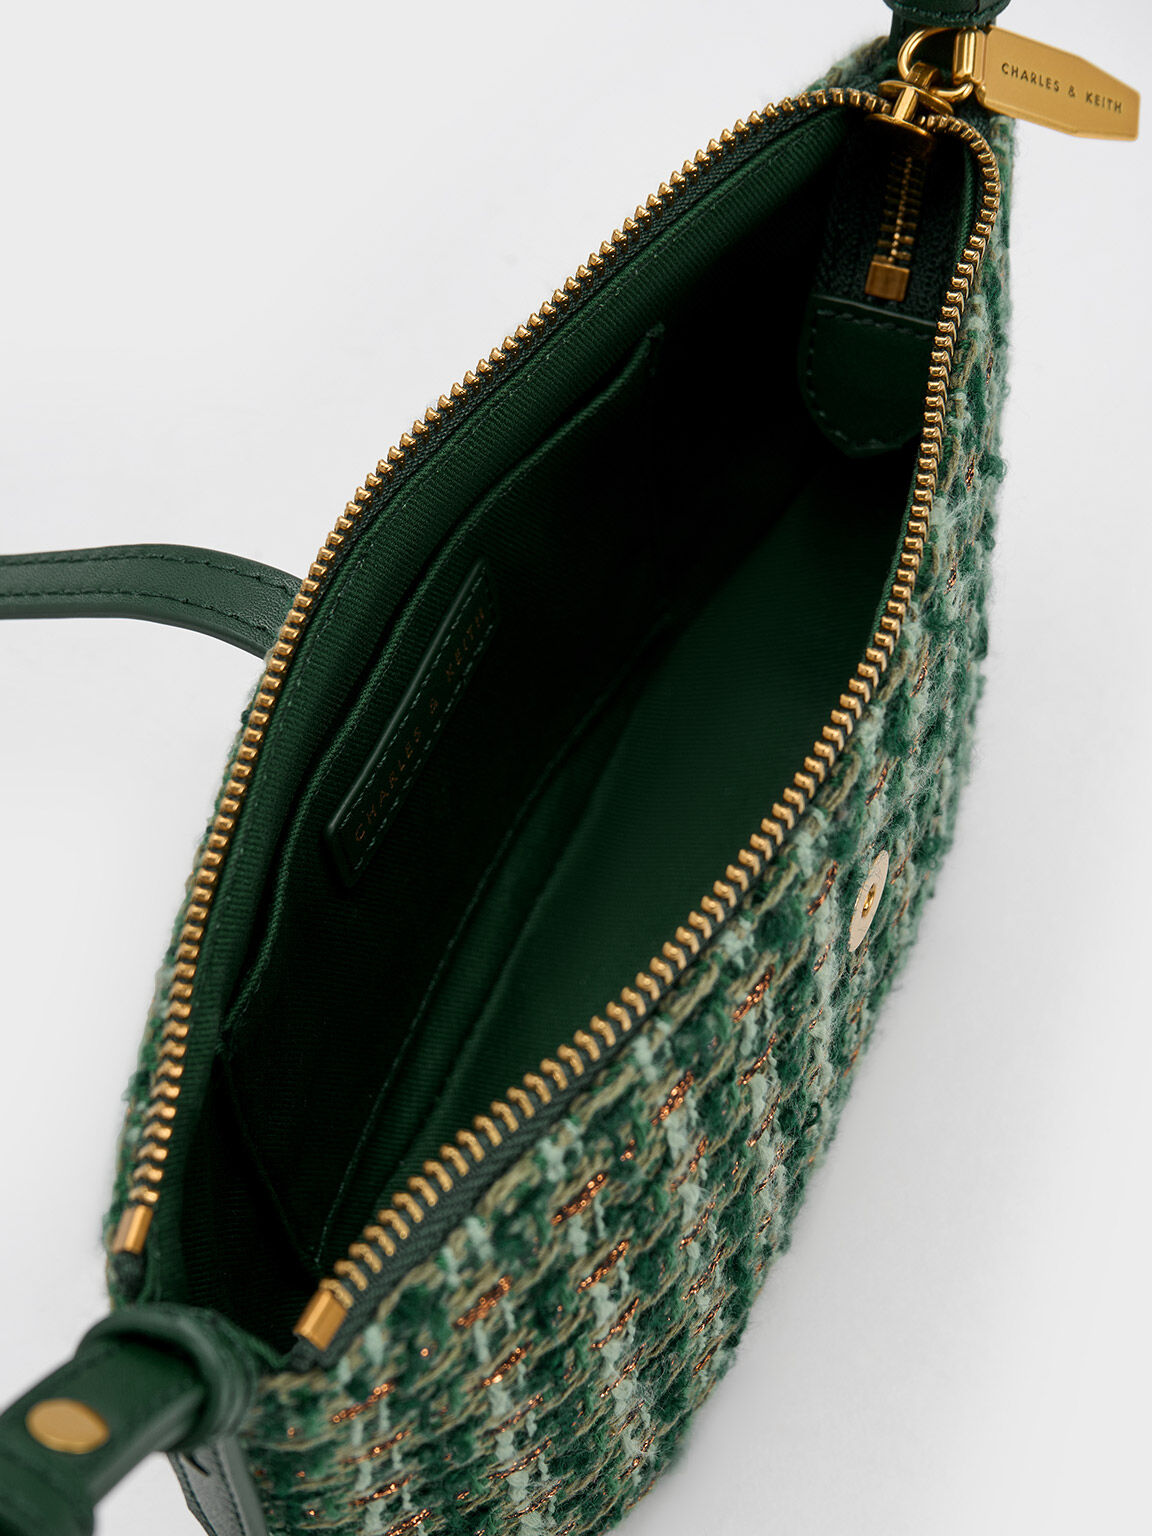 Trudy Tweed Belted Geometric Bag, Dark Green, hi-res